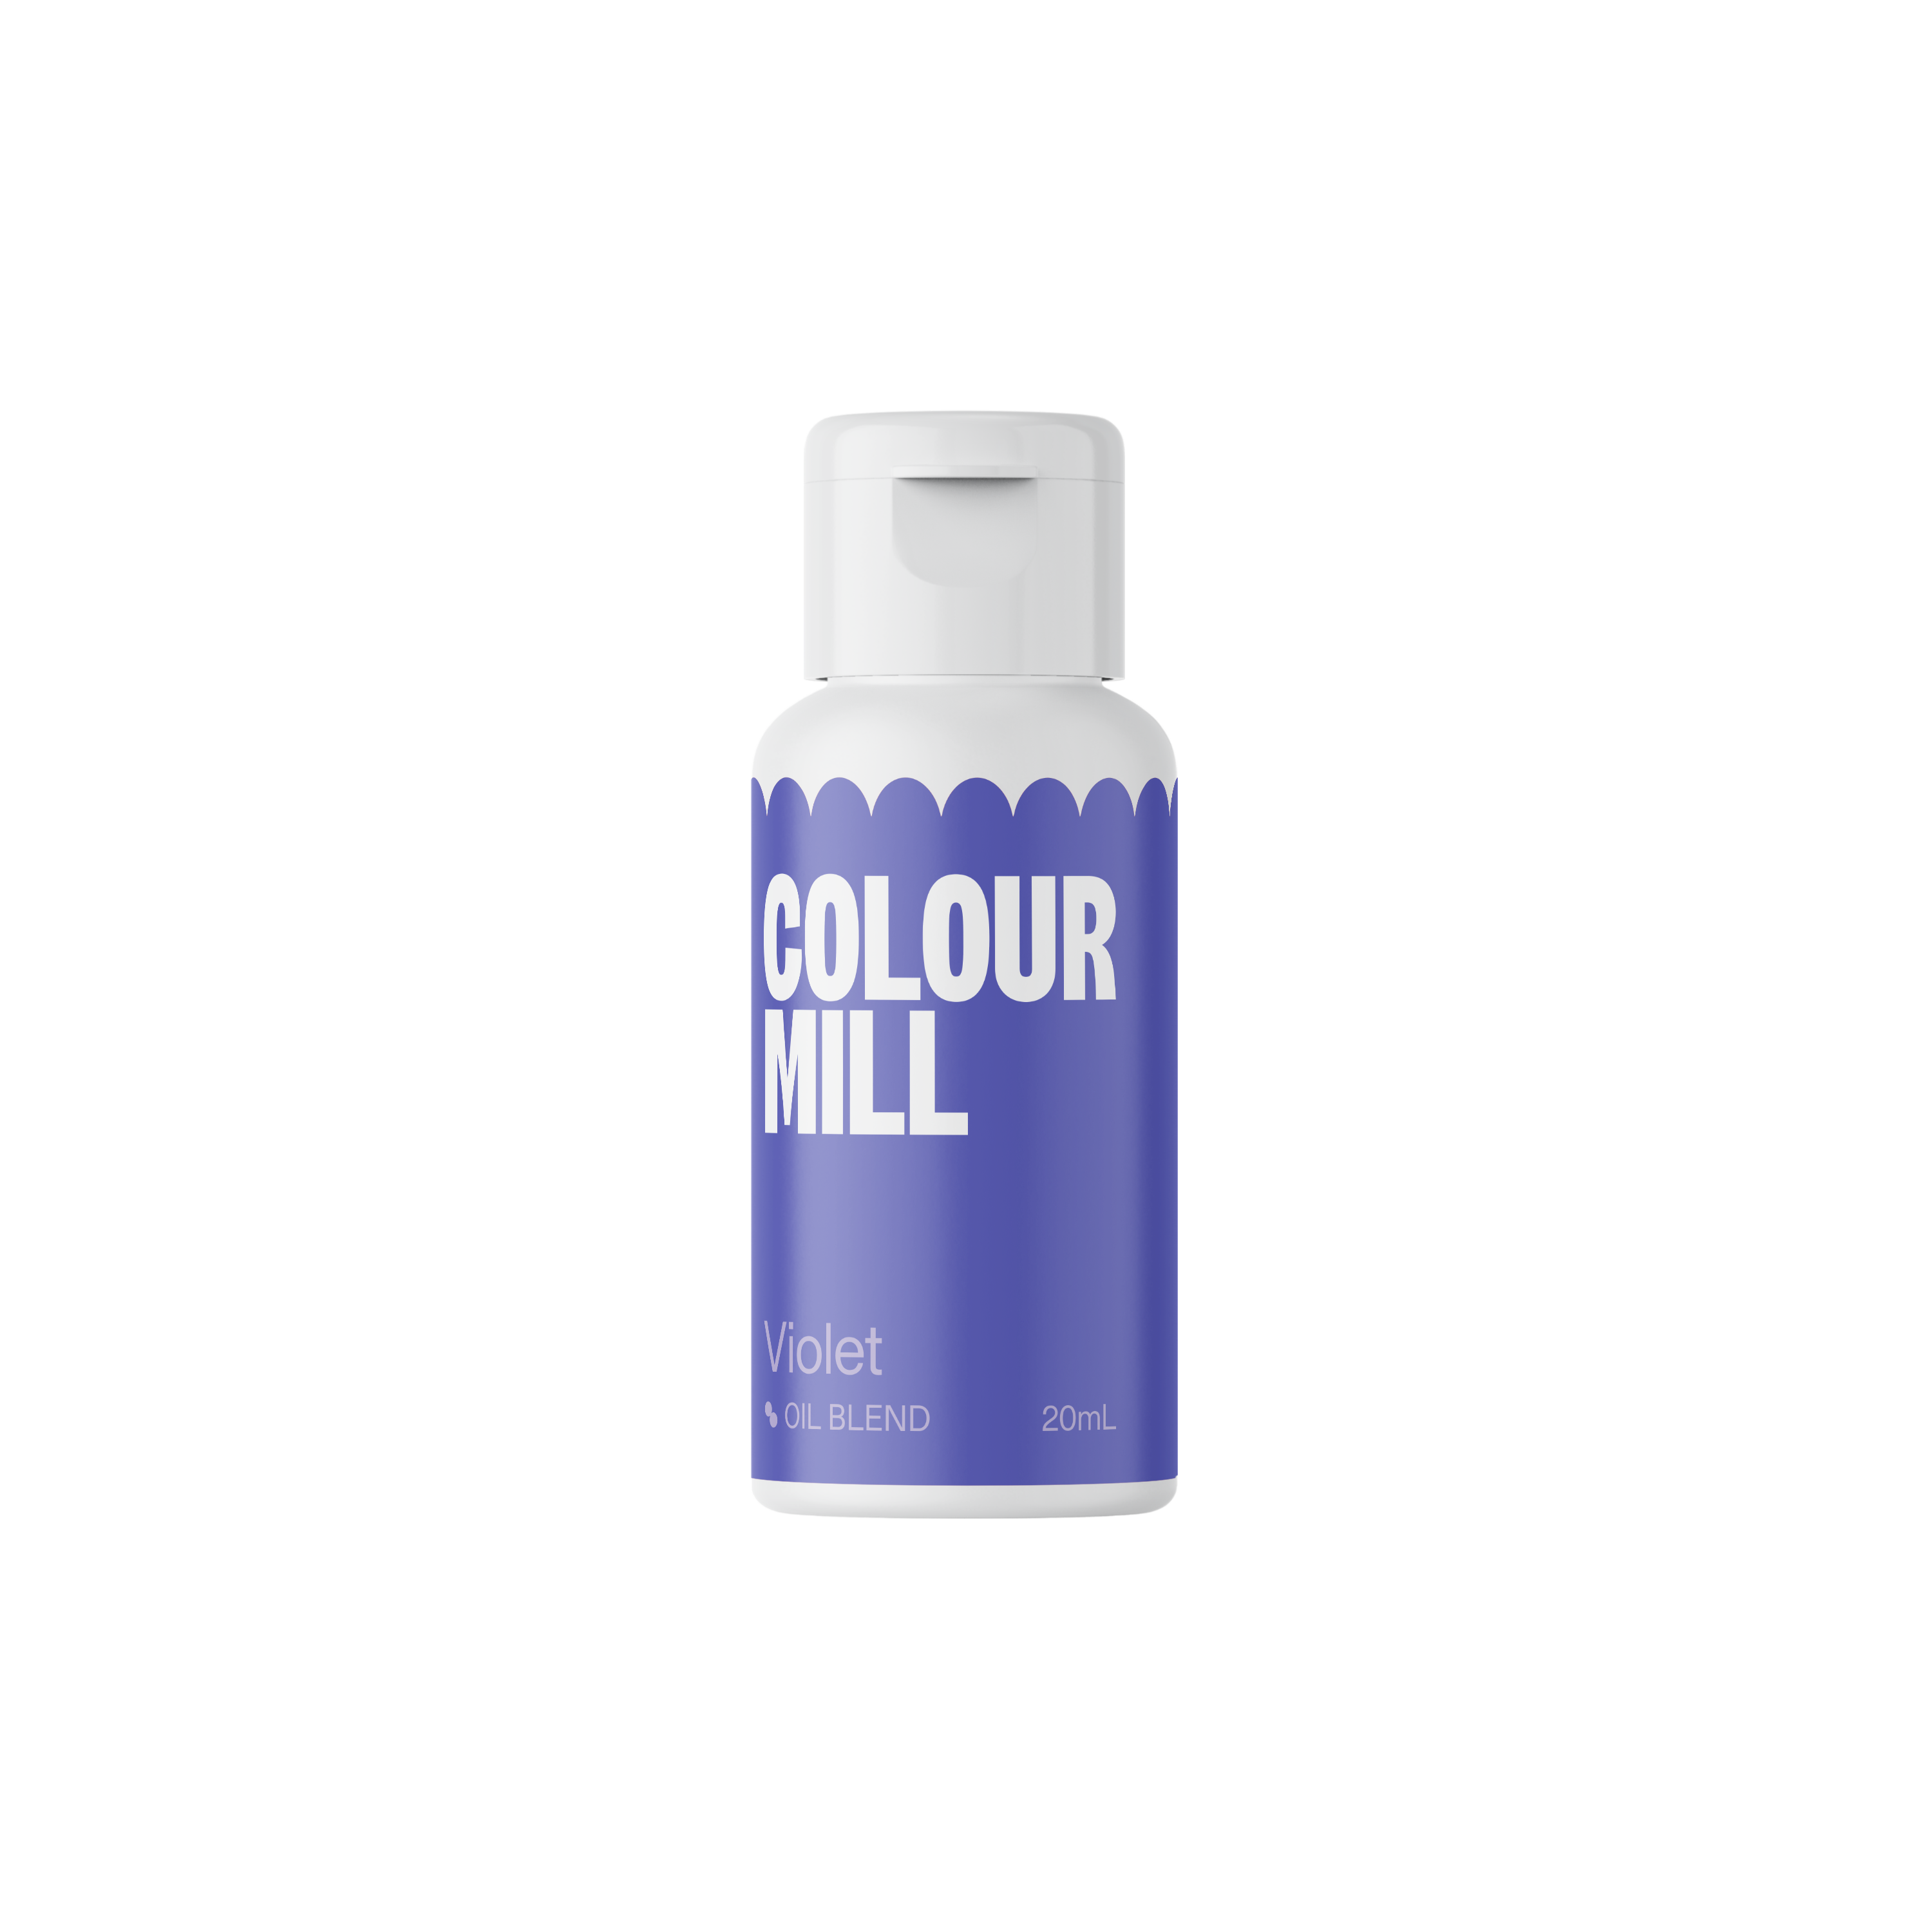 Violet - Oil Blendproduct image